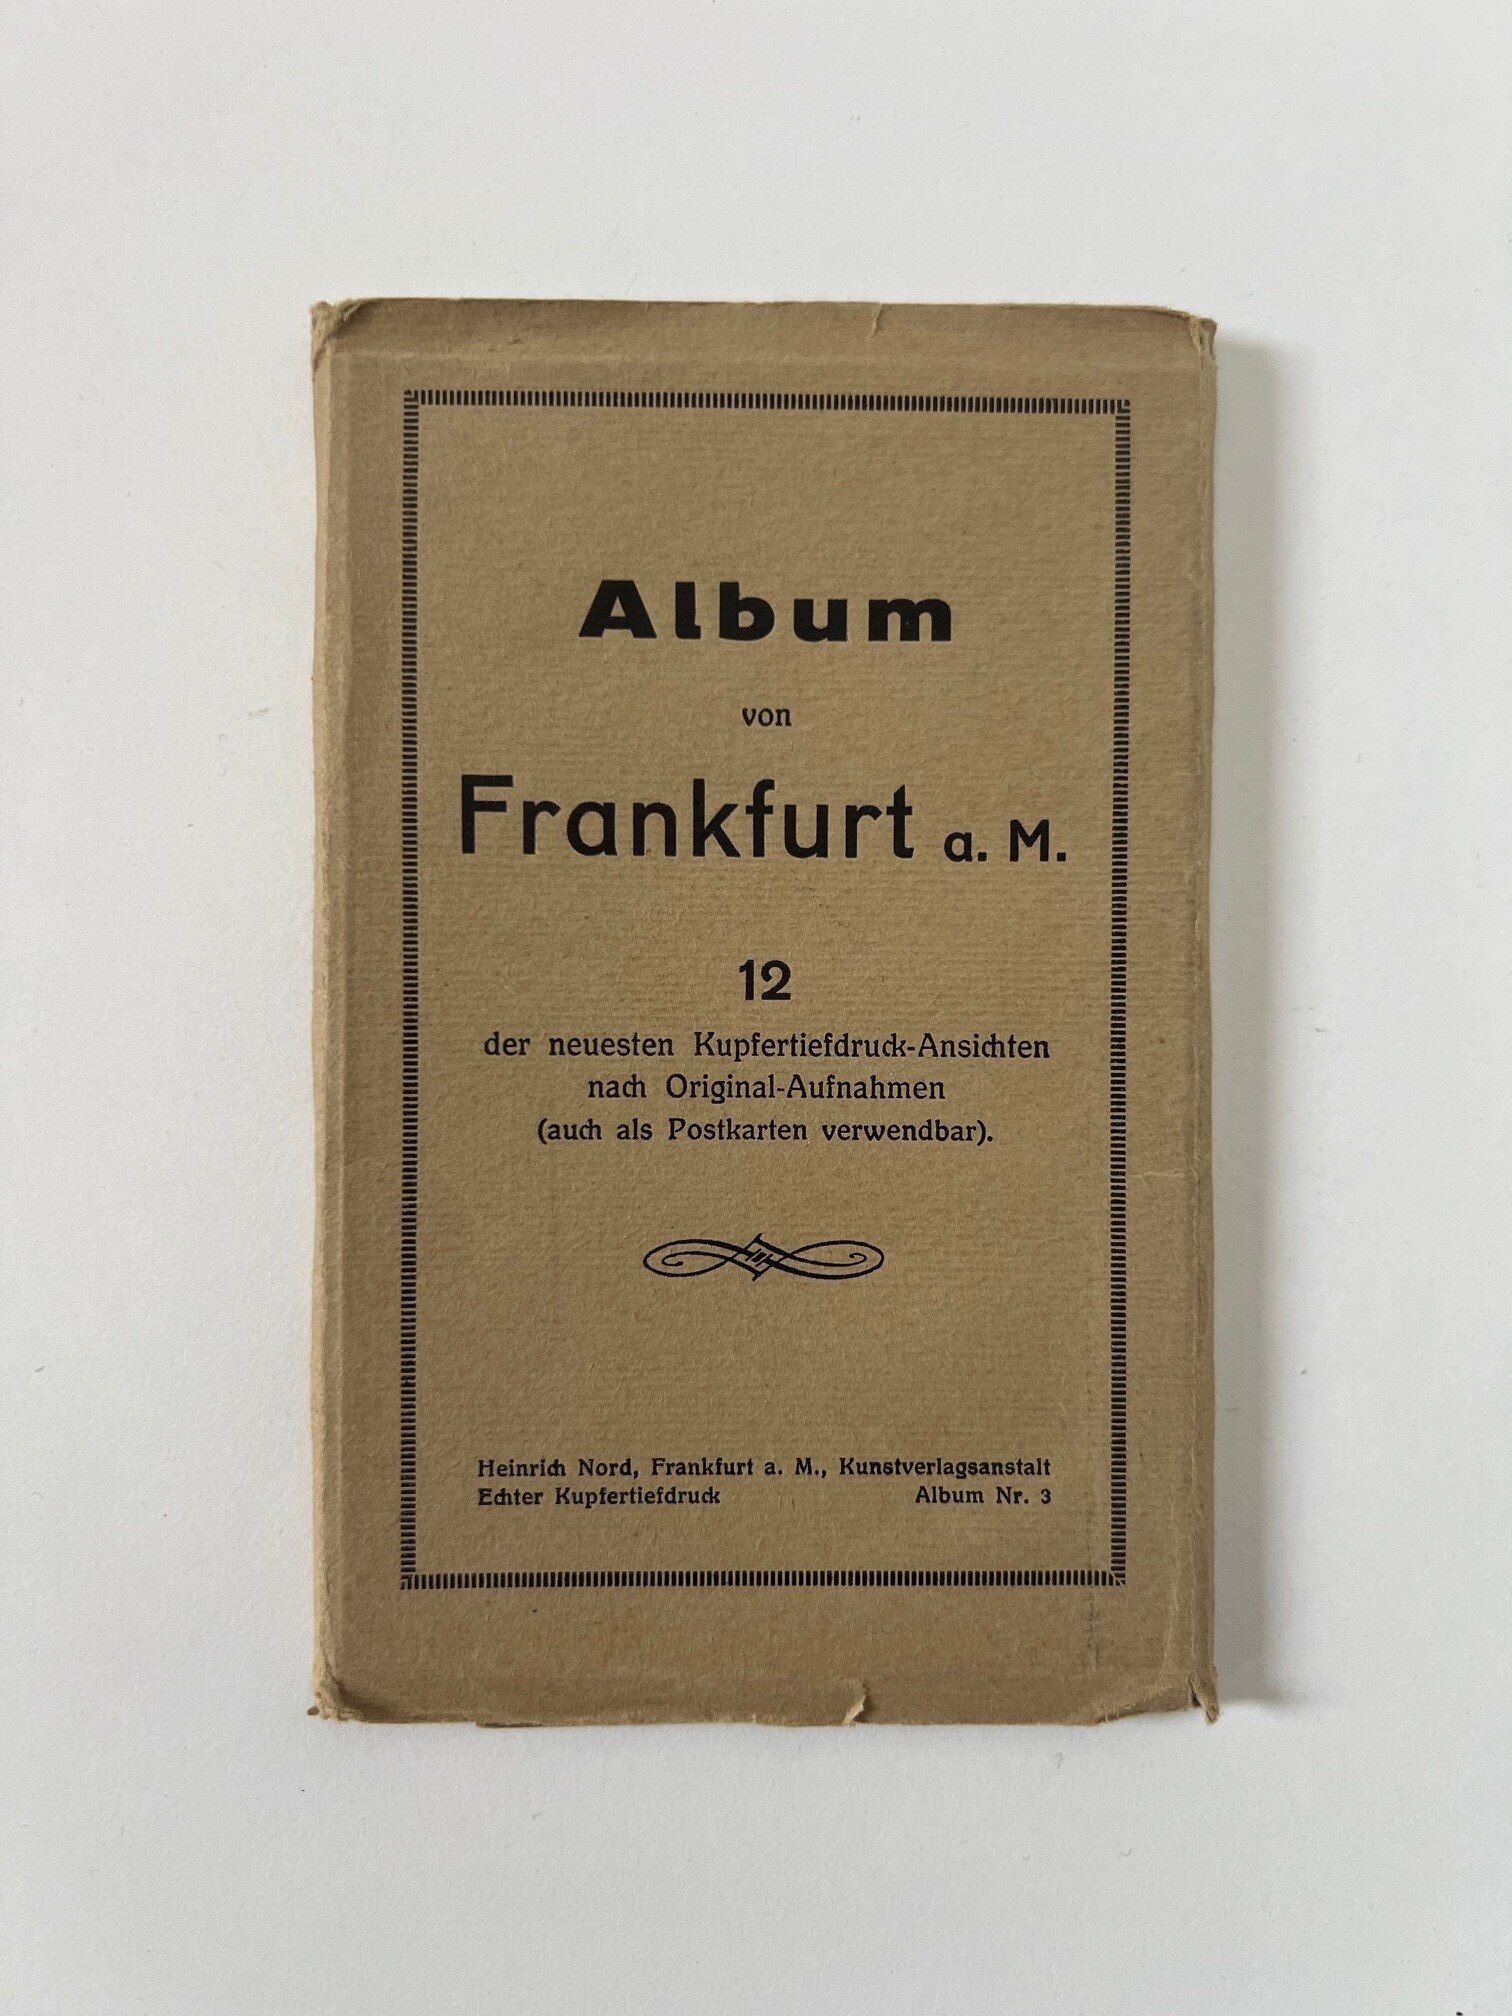 Heinrich Nord, Album von Frankfurt a. M. 12 der neuesten Kupfertiefdruck-Ansichten nach Original-Aufnahmen, ca. 1930. (Taunus-Rhein-Main - Regionalgeschichtliche Sammlung Dr. Stefan Naas CC BY-NC-SA)